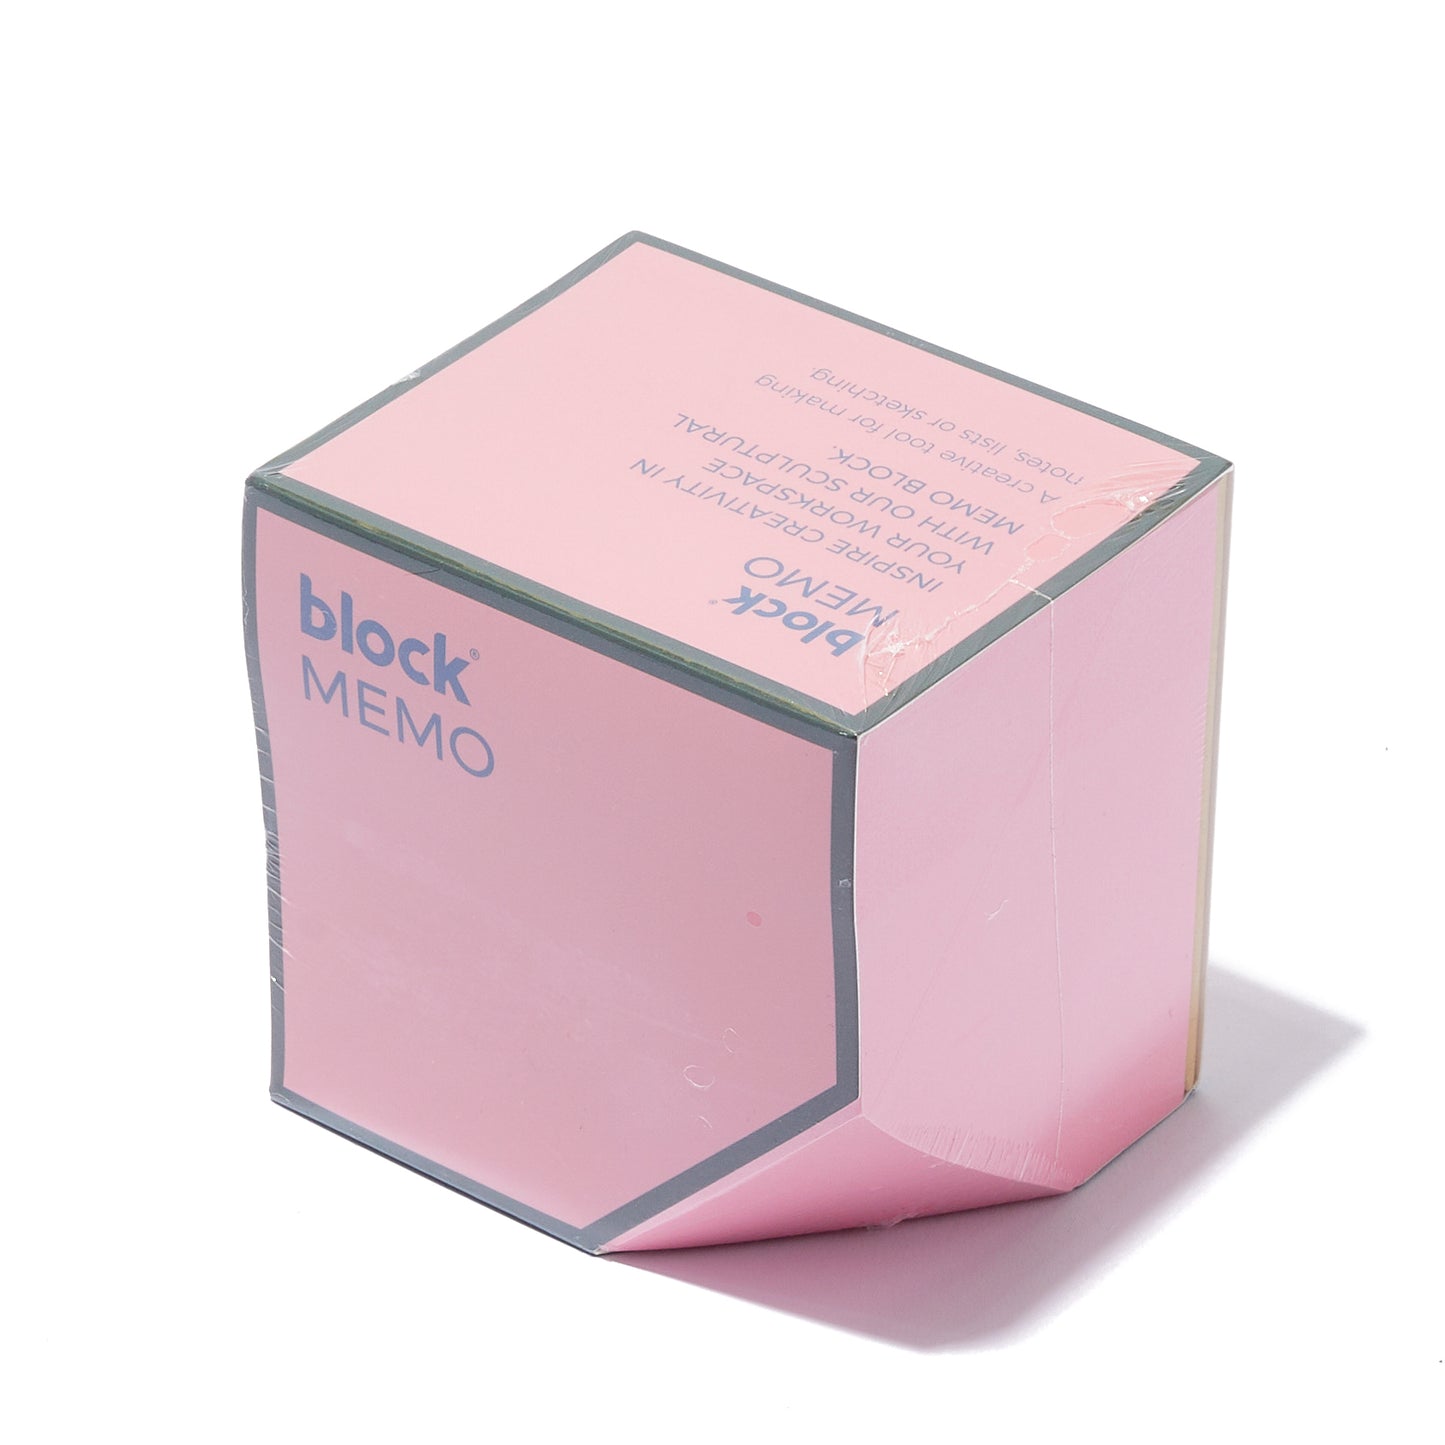 MEMO BLOCK | PINK